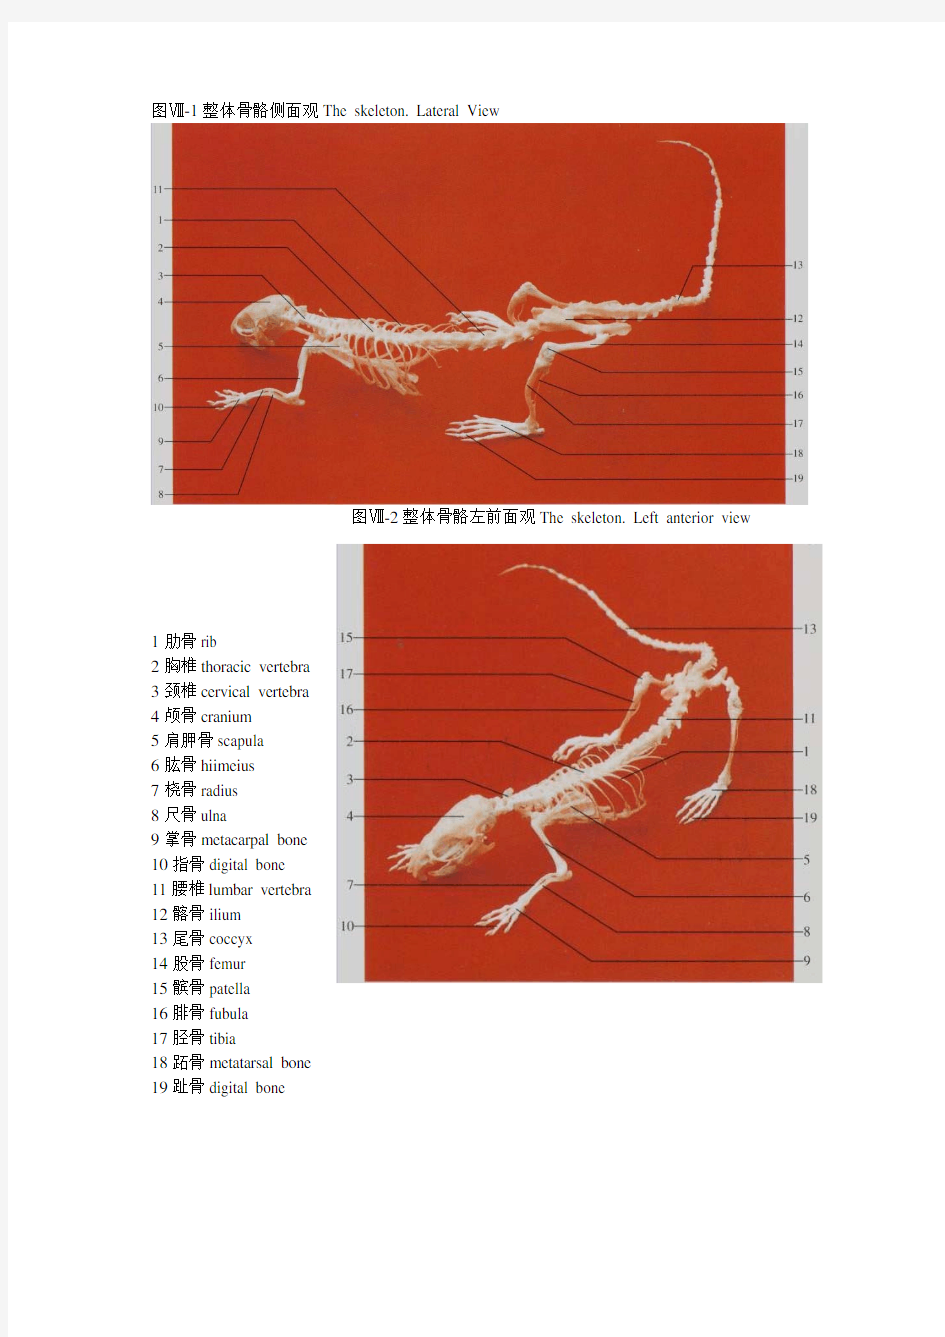 大鼠和小鼠解剖图谱(照片版)